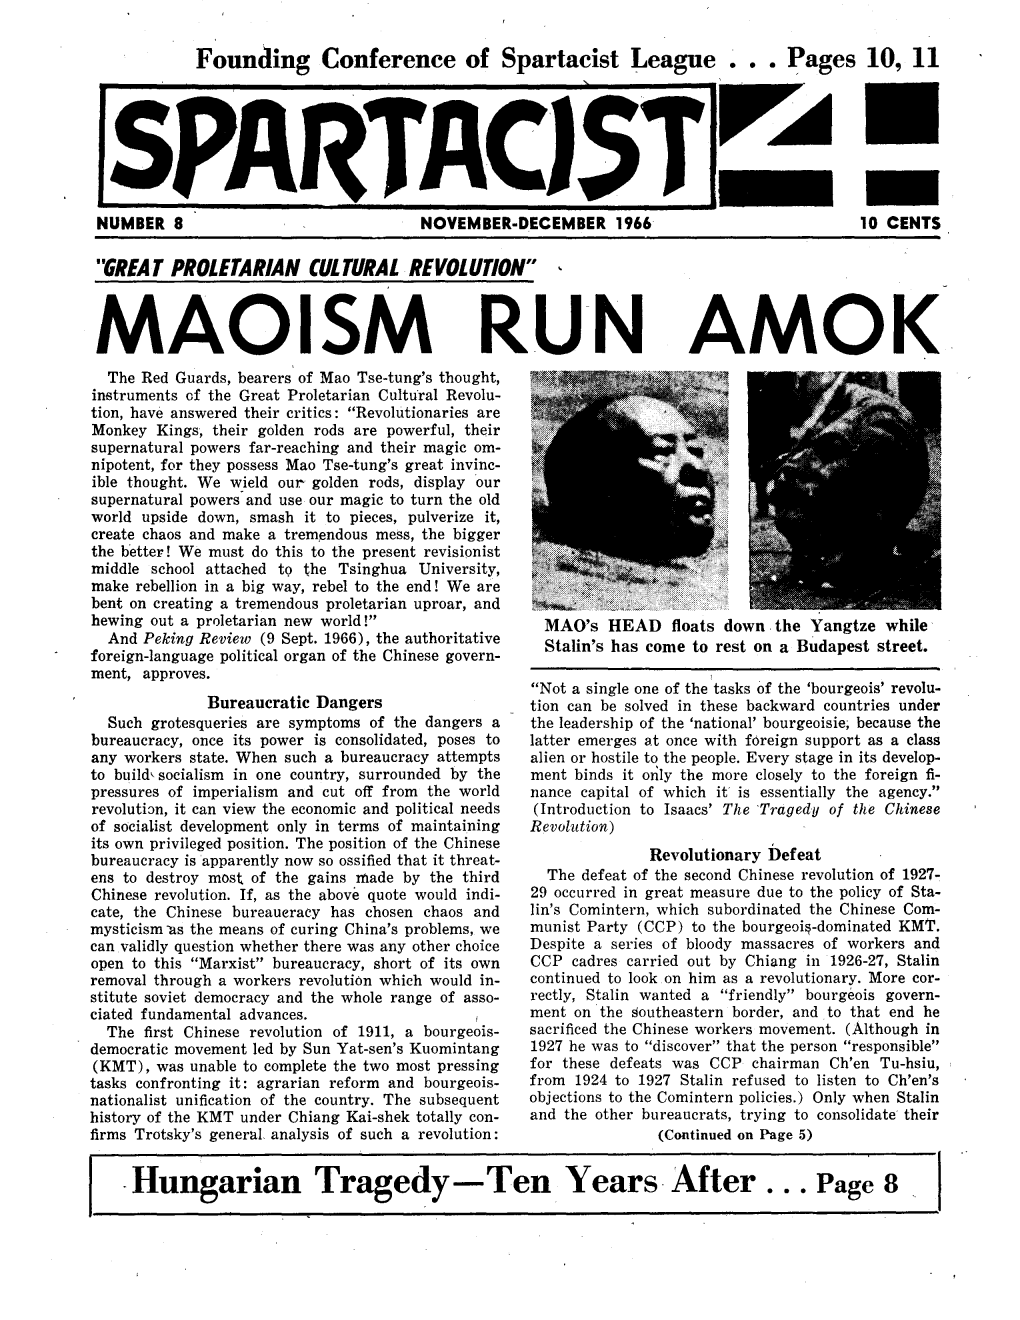 Maoism Run Amok